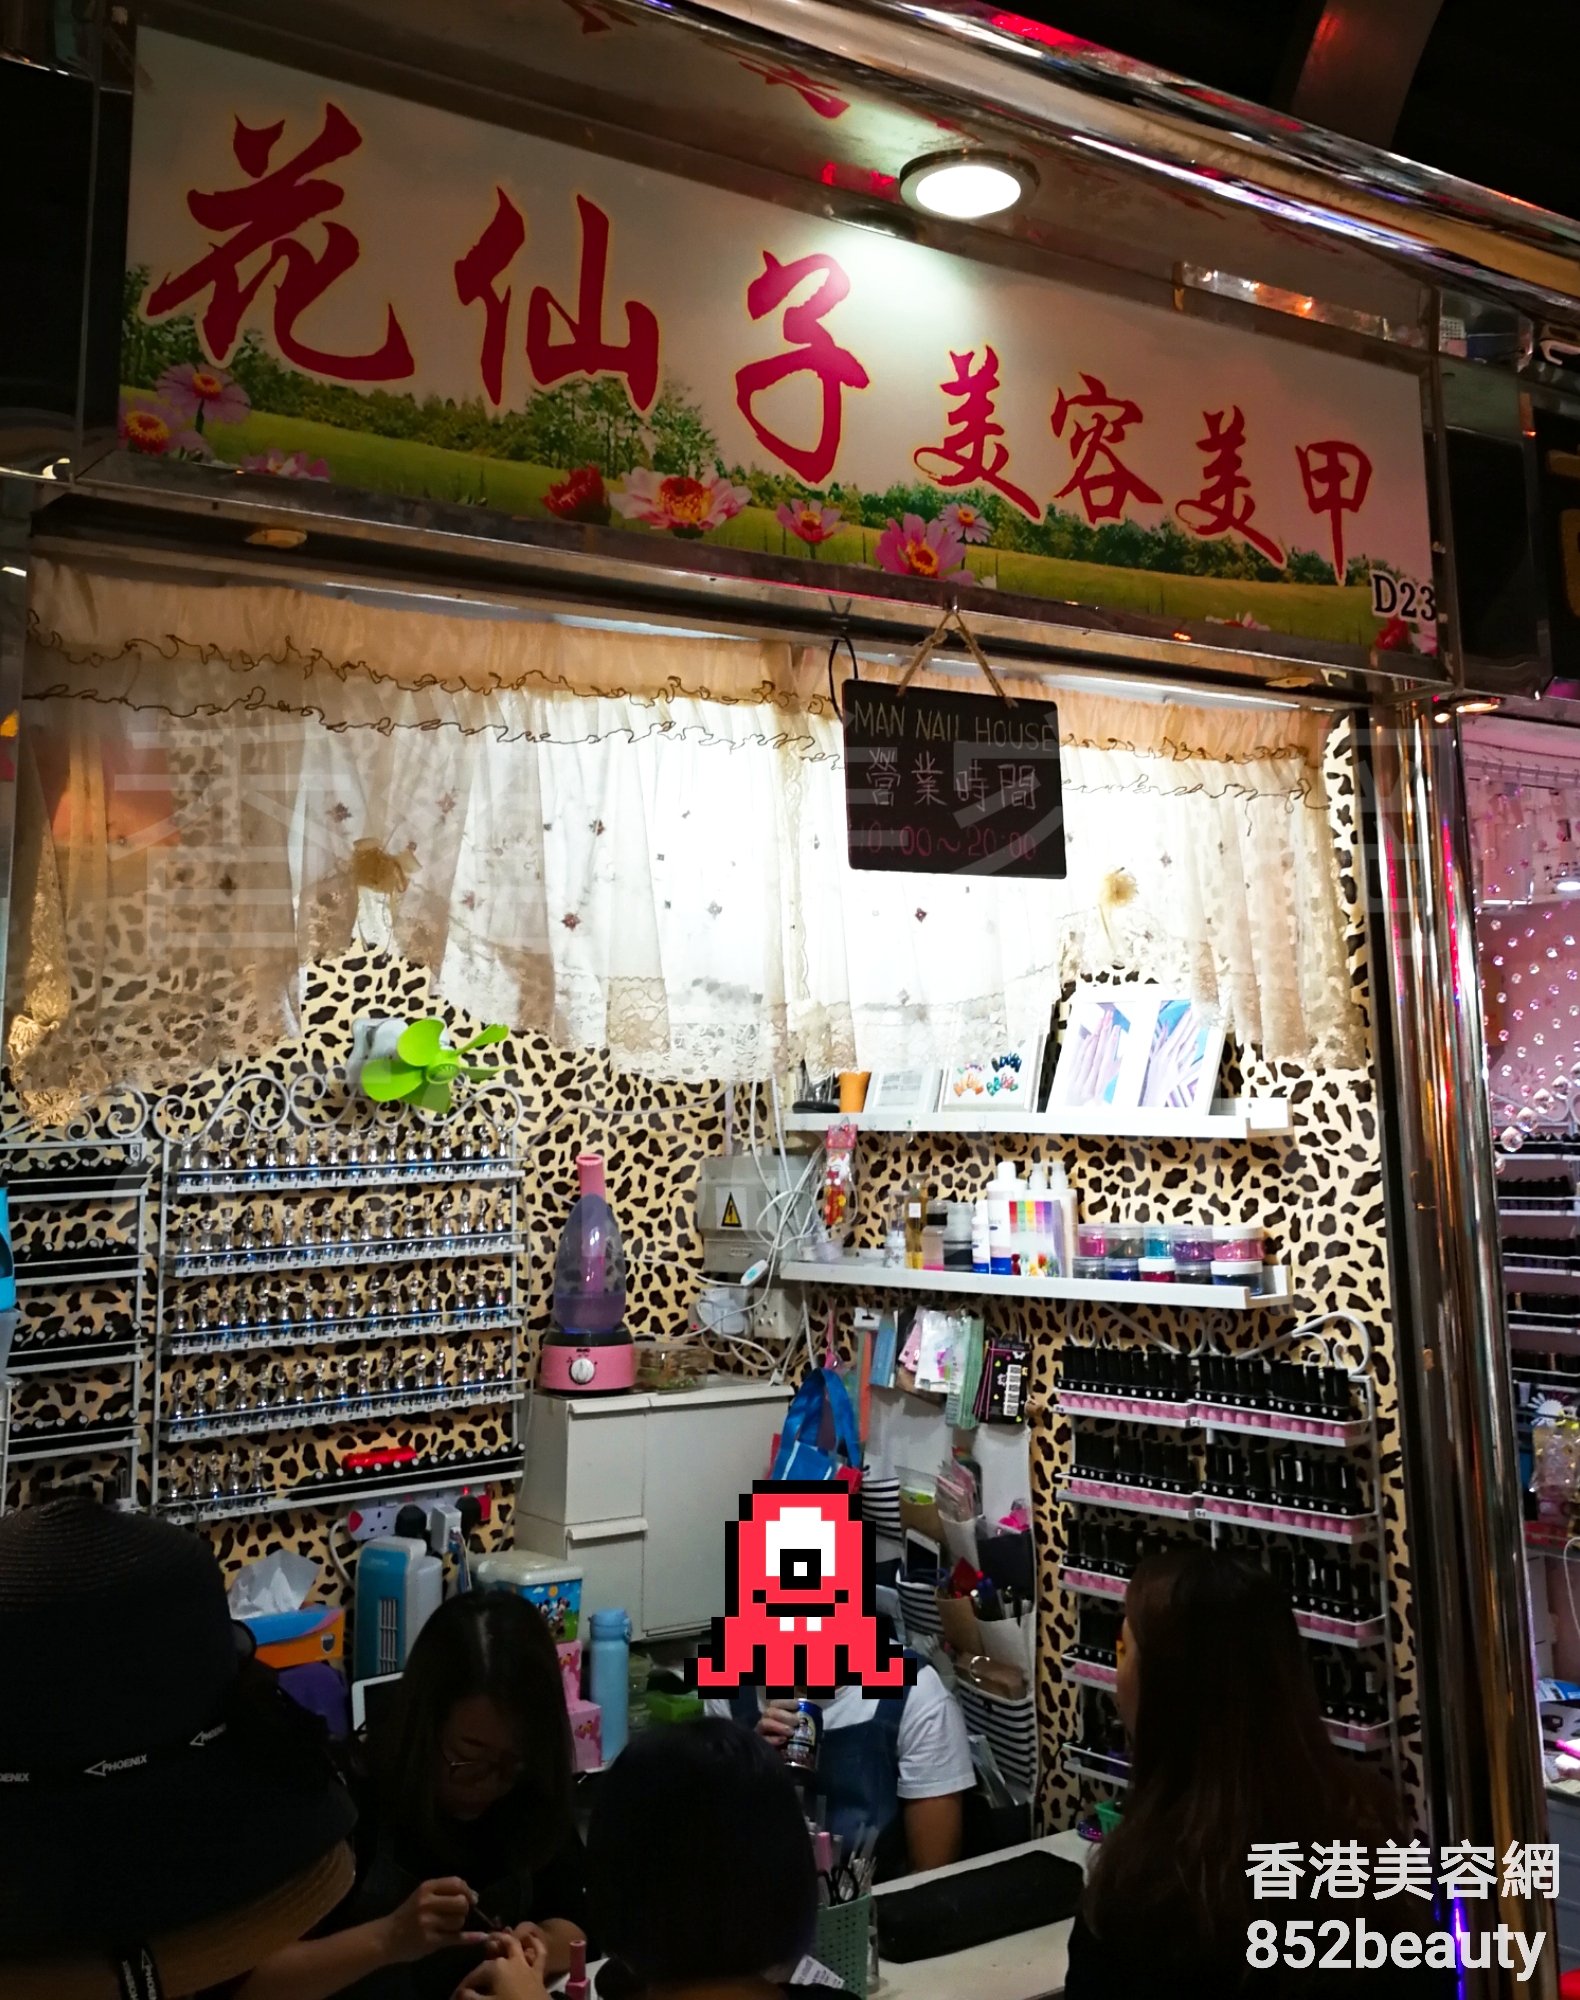 香港美容網 Hong Kong Beauty Salon 美容院 / 美容師: 花仙子 美容美甲